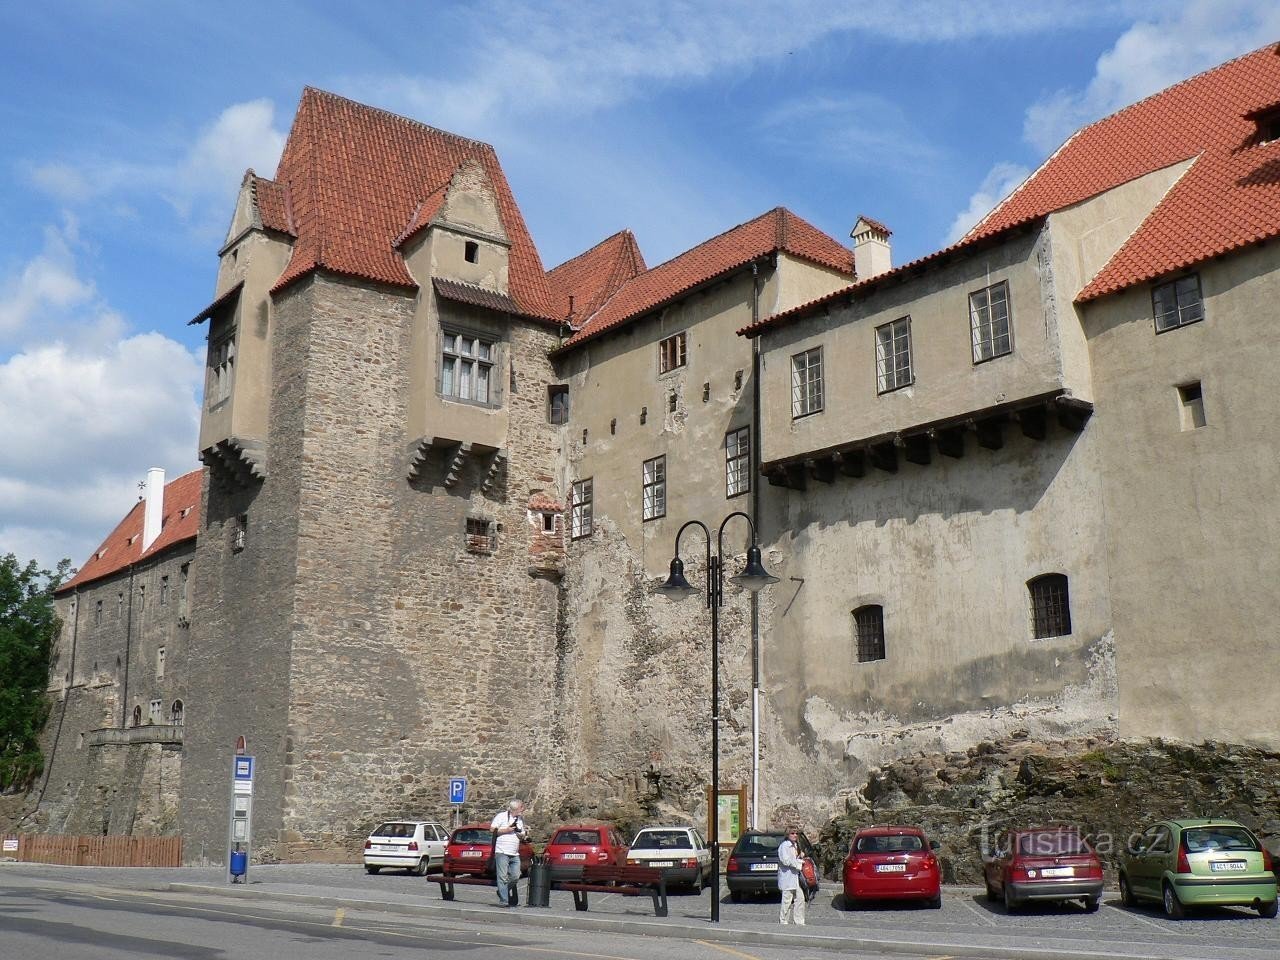 Lâu đài Strakonický, Jelenka